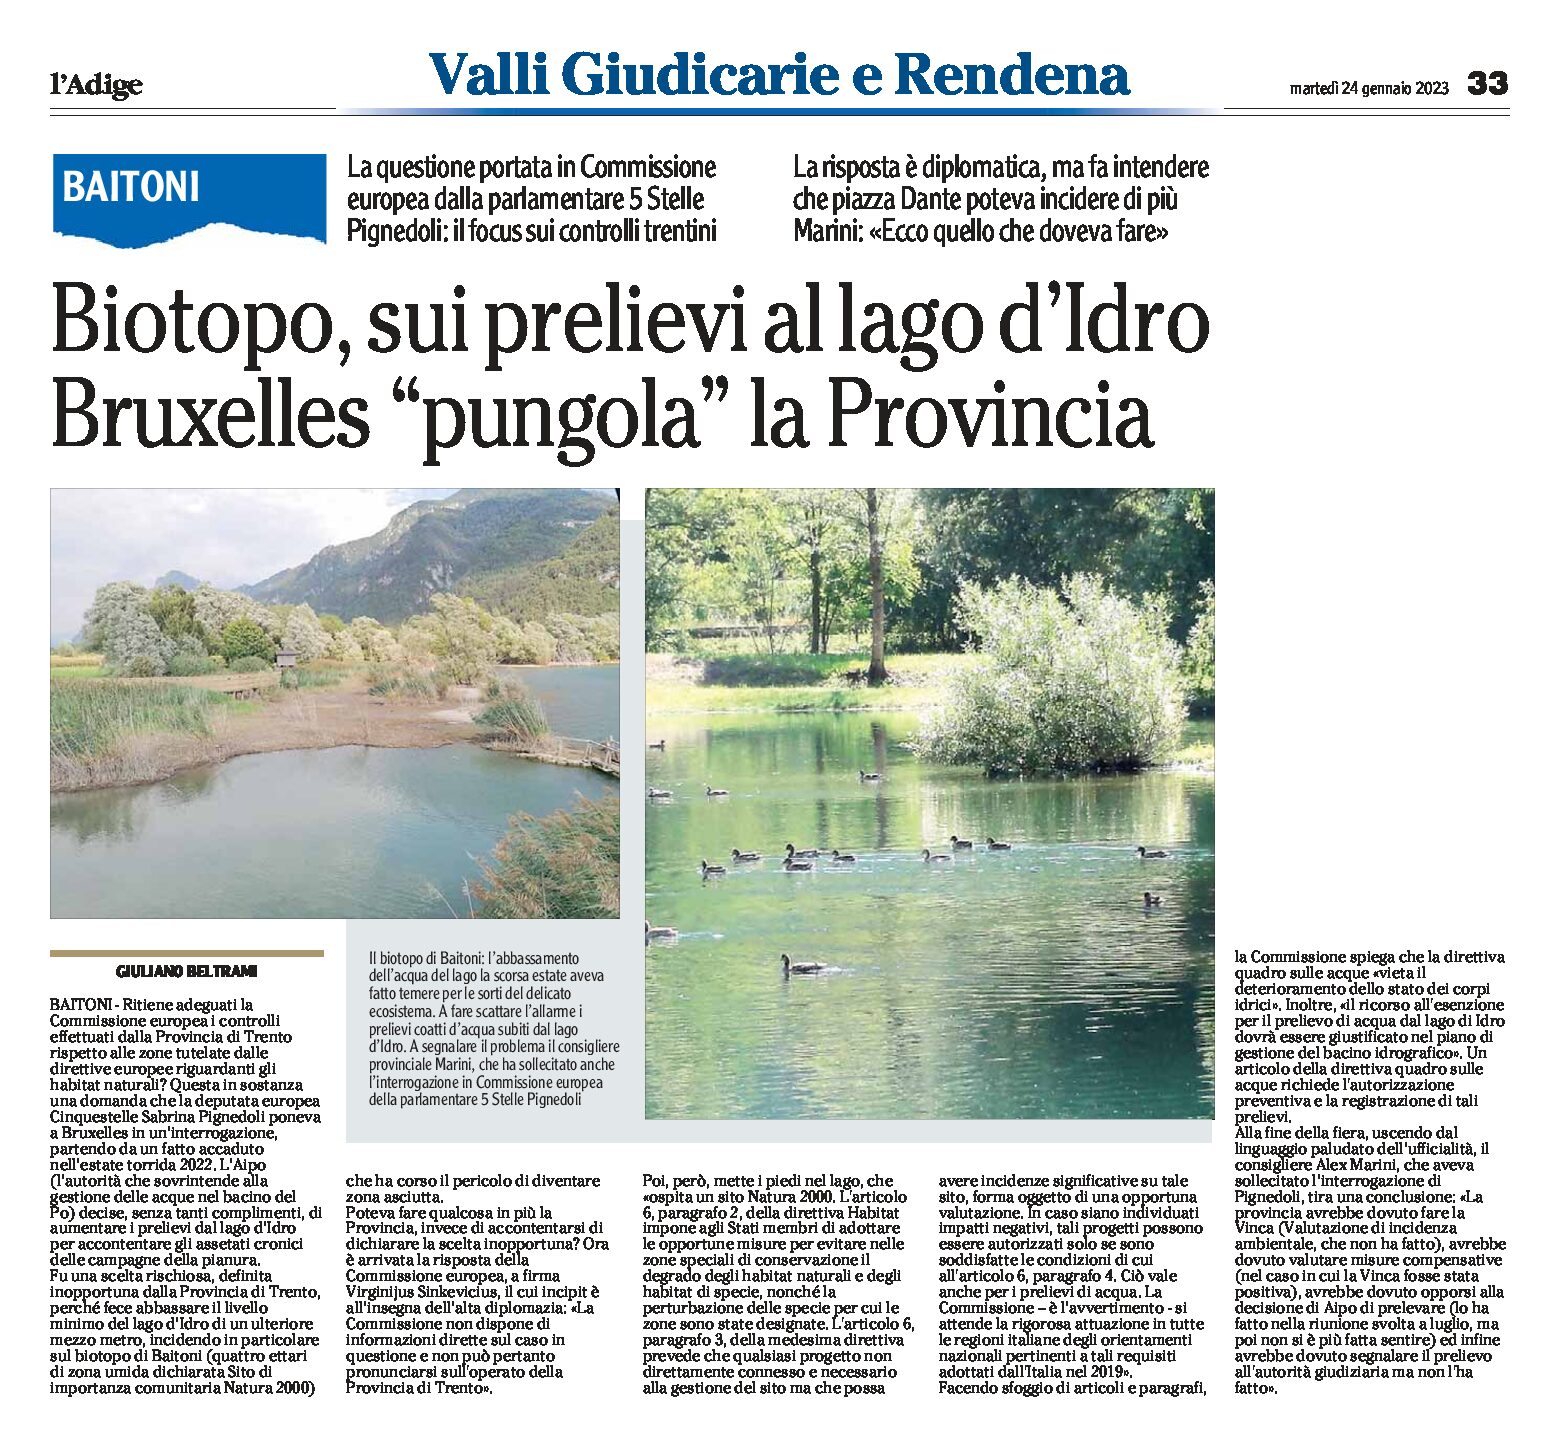 Baitoni, biotopo: sui prelievi al lago d’Idro Bruxelles “pungola” la Provincia